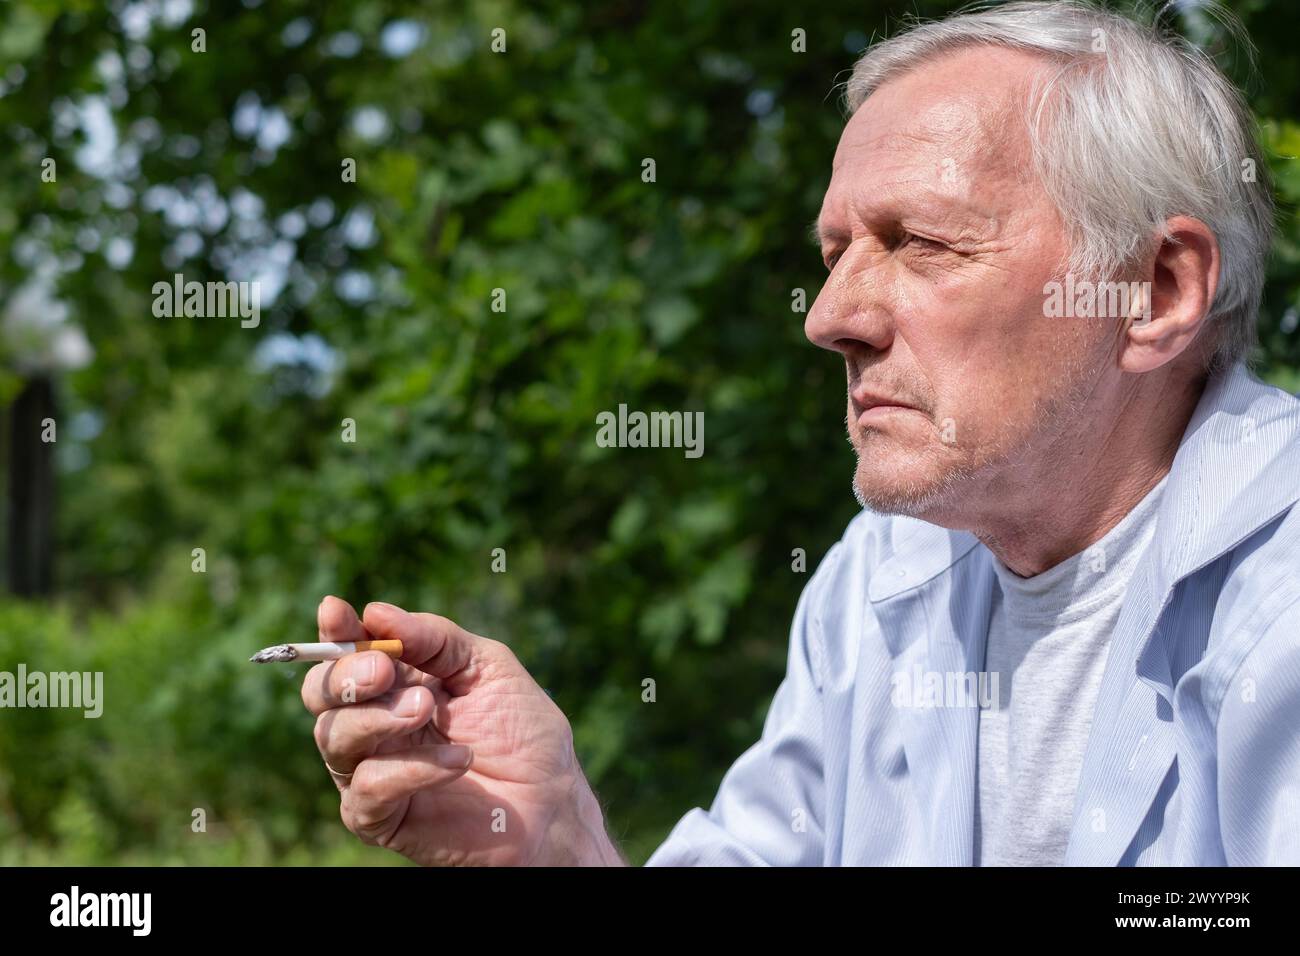 Un uomo anziano prende una briga da una sigaretta, avvolto nella serenità del suo giardino alberato, una giustapposizione di natura e abitudine. Foto di alta qualità Foto Stock